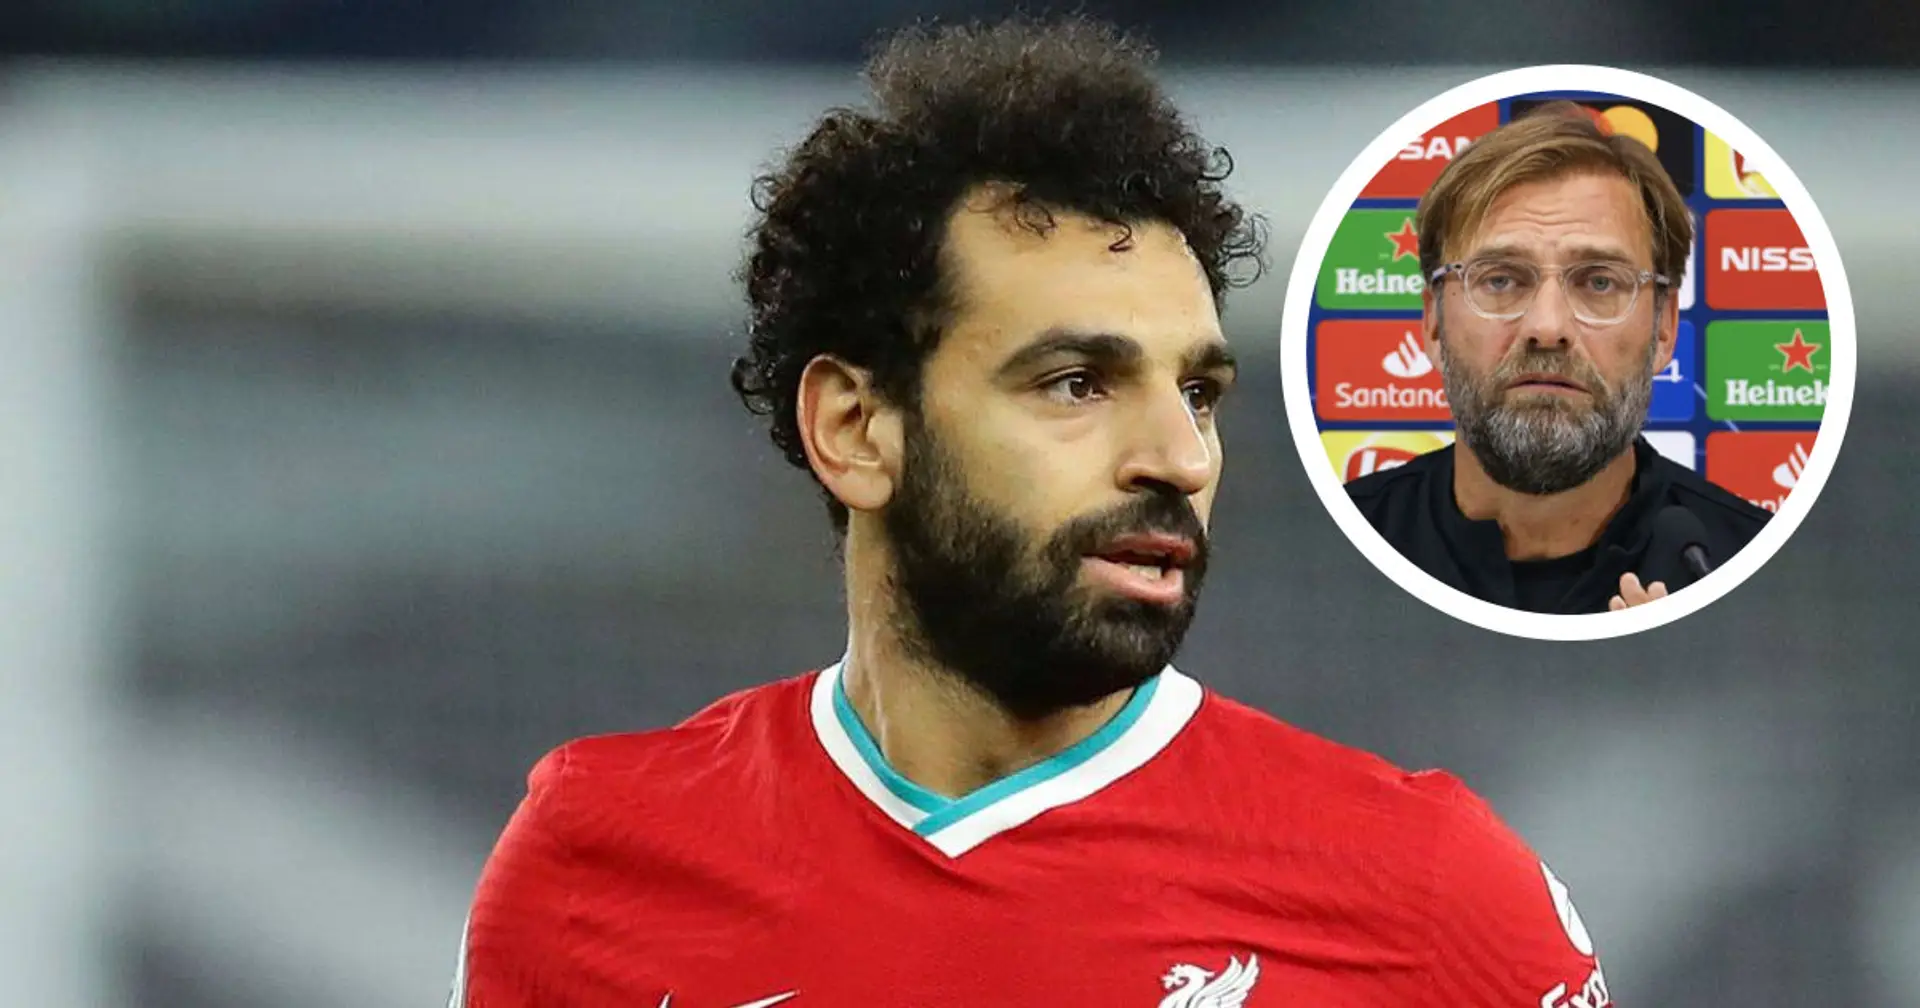 "Faremo dei cambi", Klopp annuncia il turnover contro il Milan e parla del possibile impiego di Salah